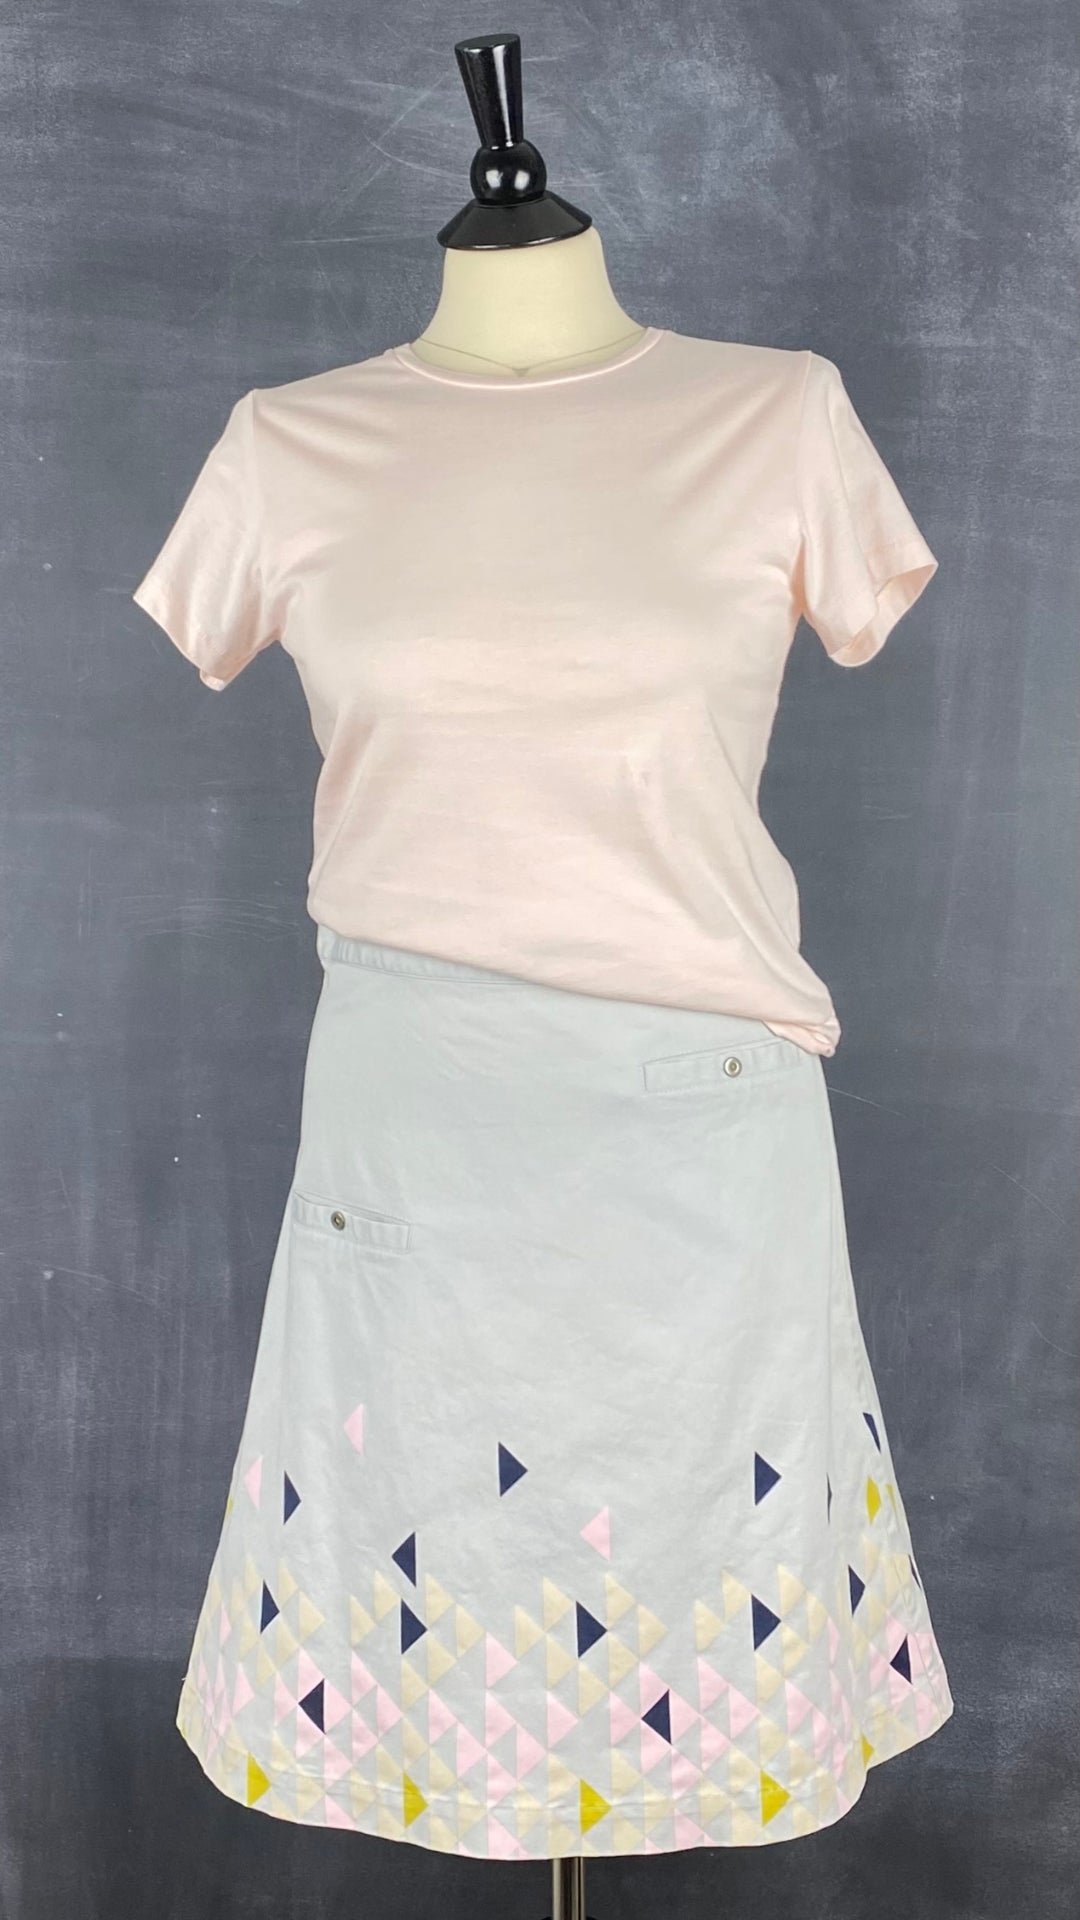 Jupe triangles St-Martins, taille 36 (small). Vue de l'agencement avec un t-shirt rose pâle Tristan.